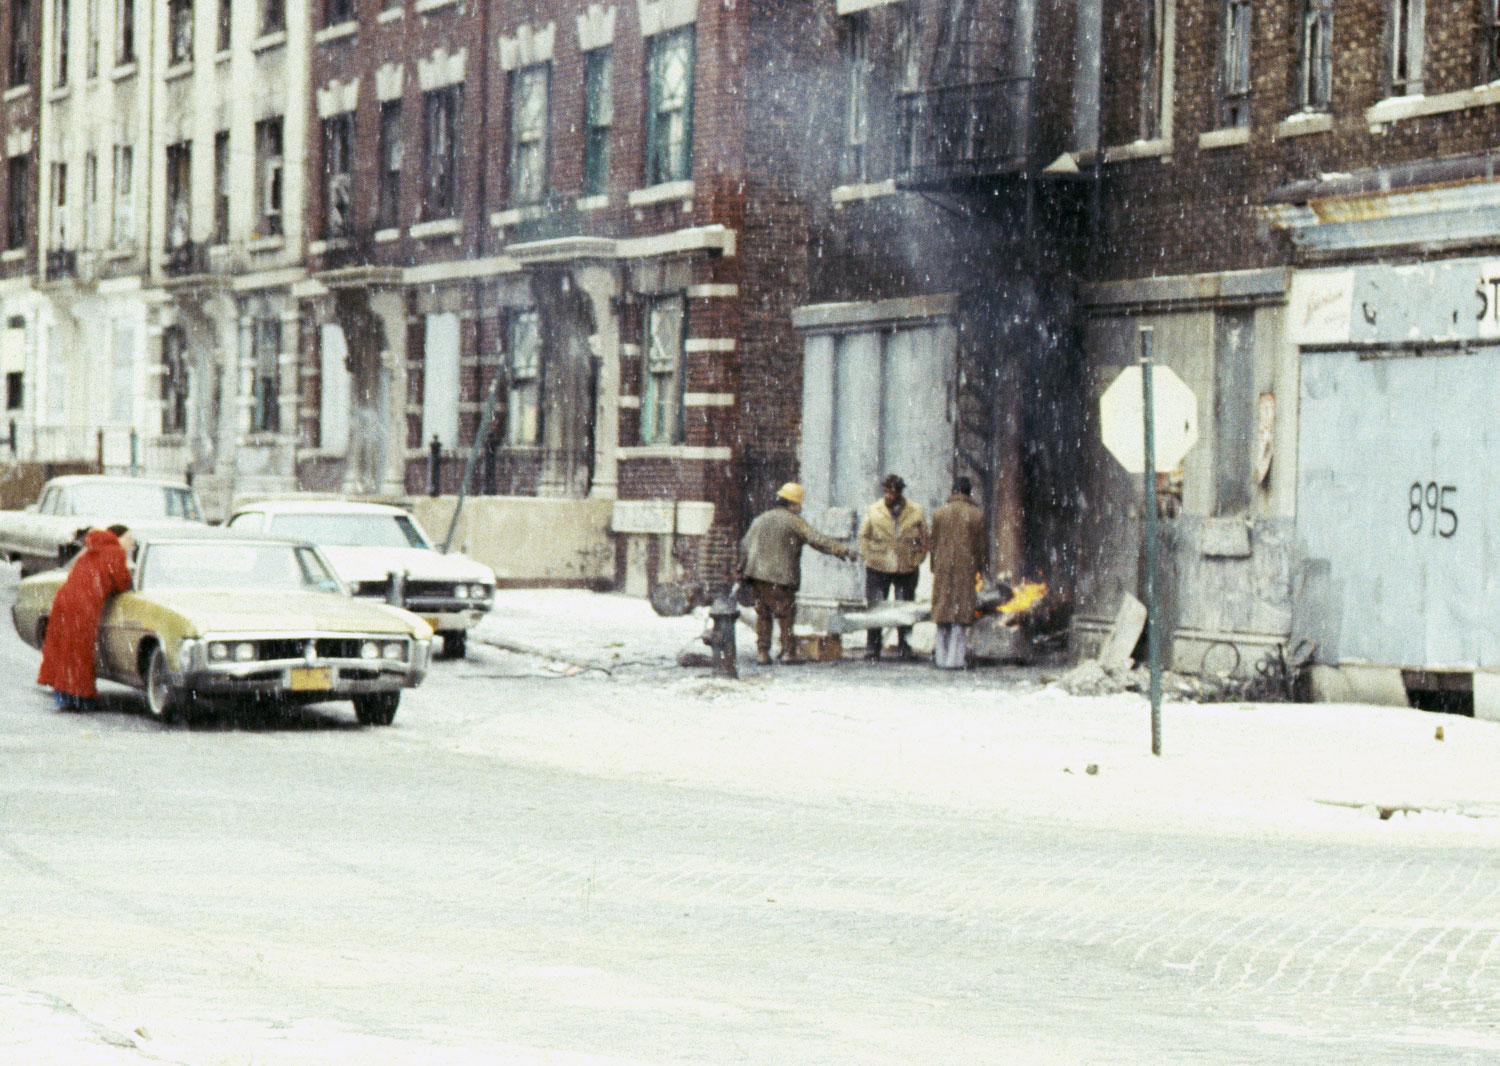 Keeping warm 1979